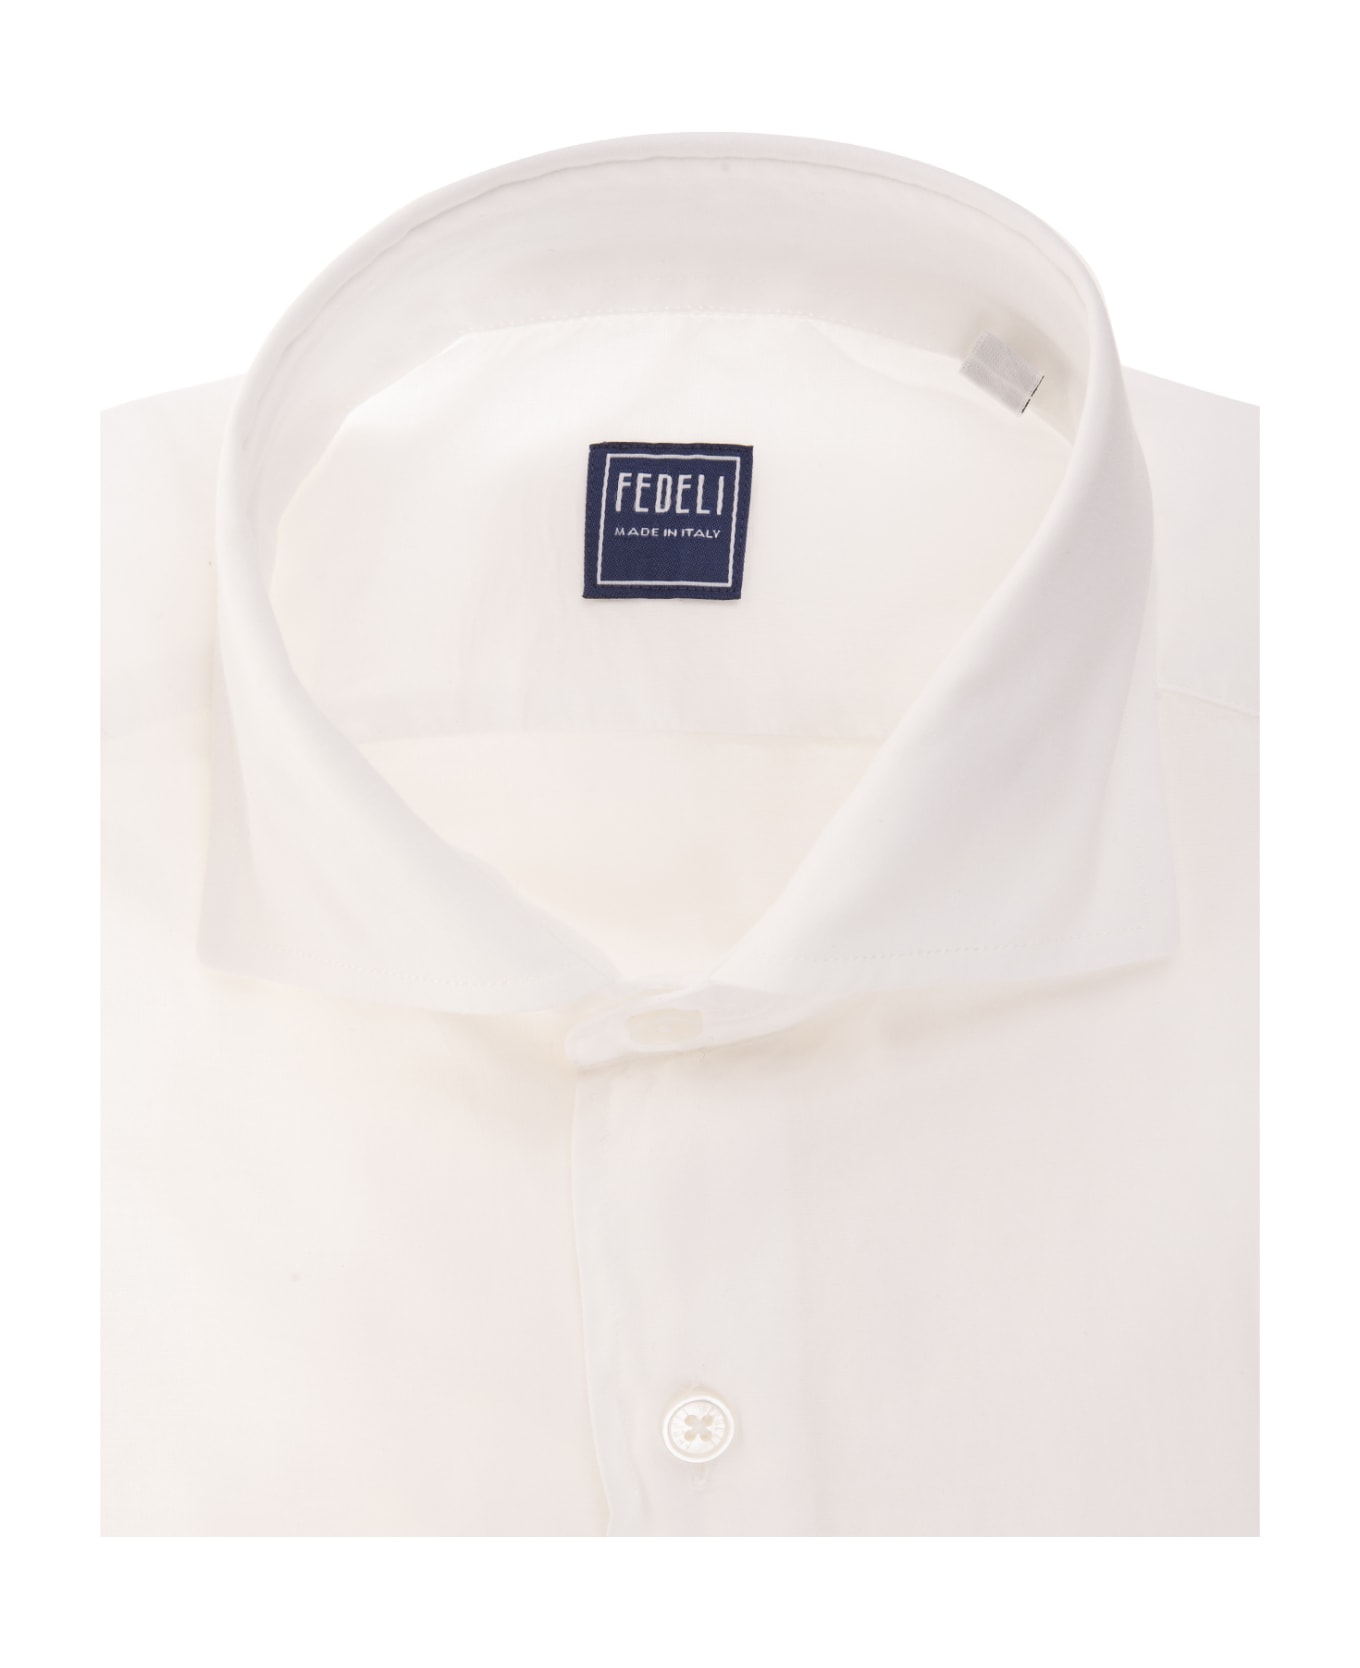 Fedeli White Poplin Classic Shirt - White